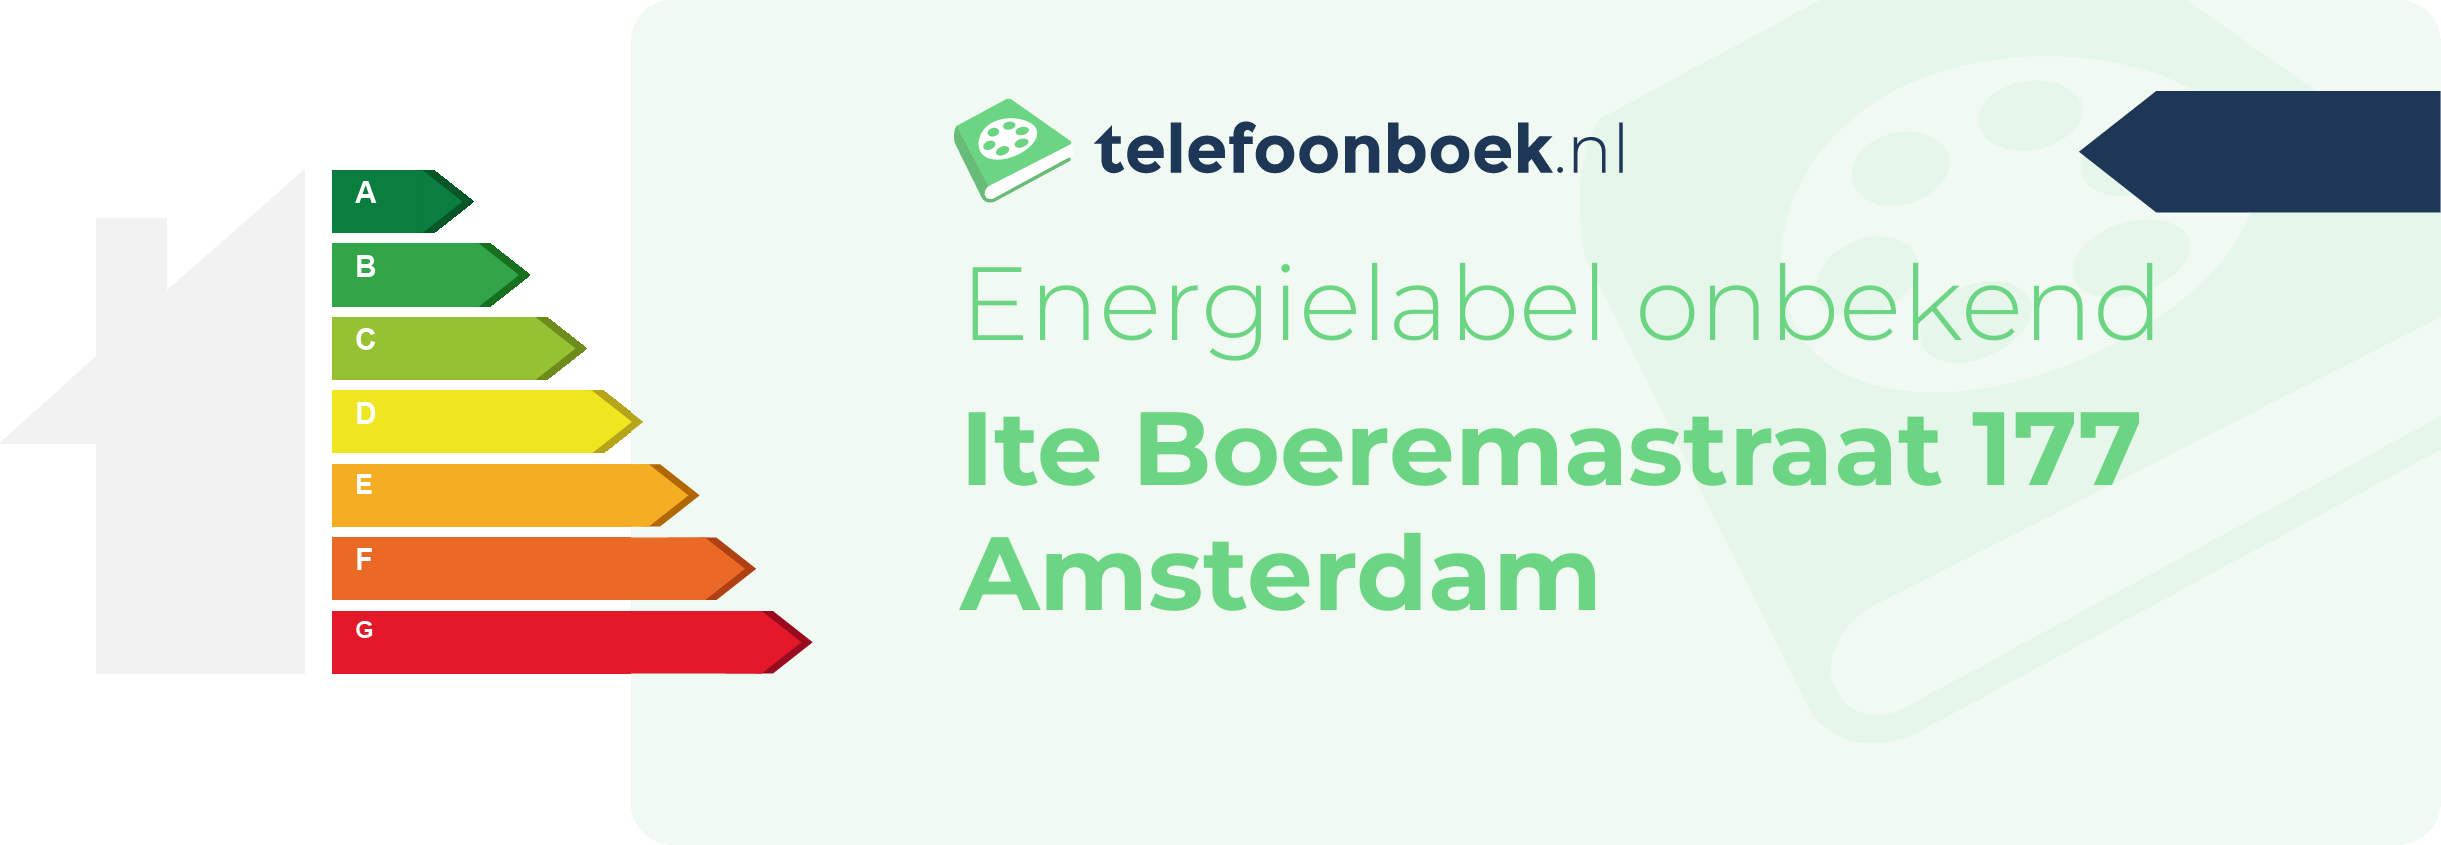 Energielabel Ite Boeremastraat 177 Amsterdam